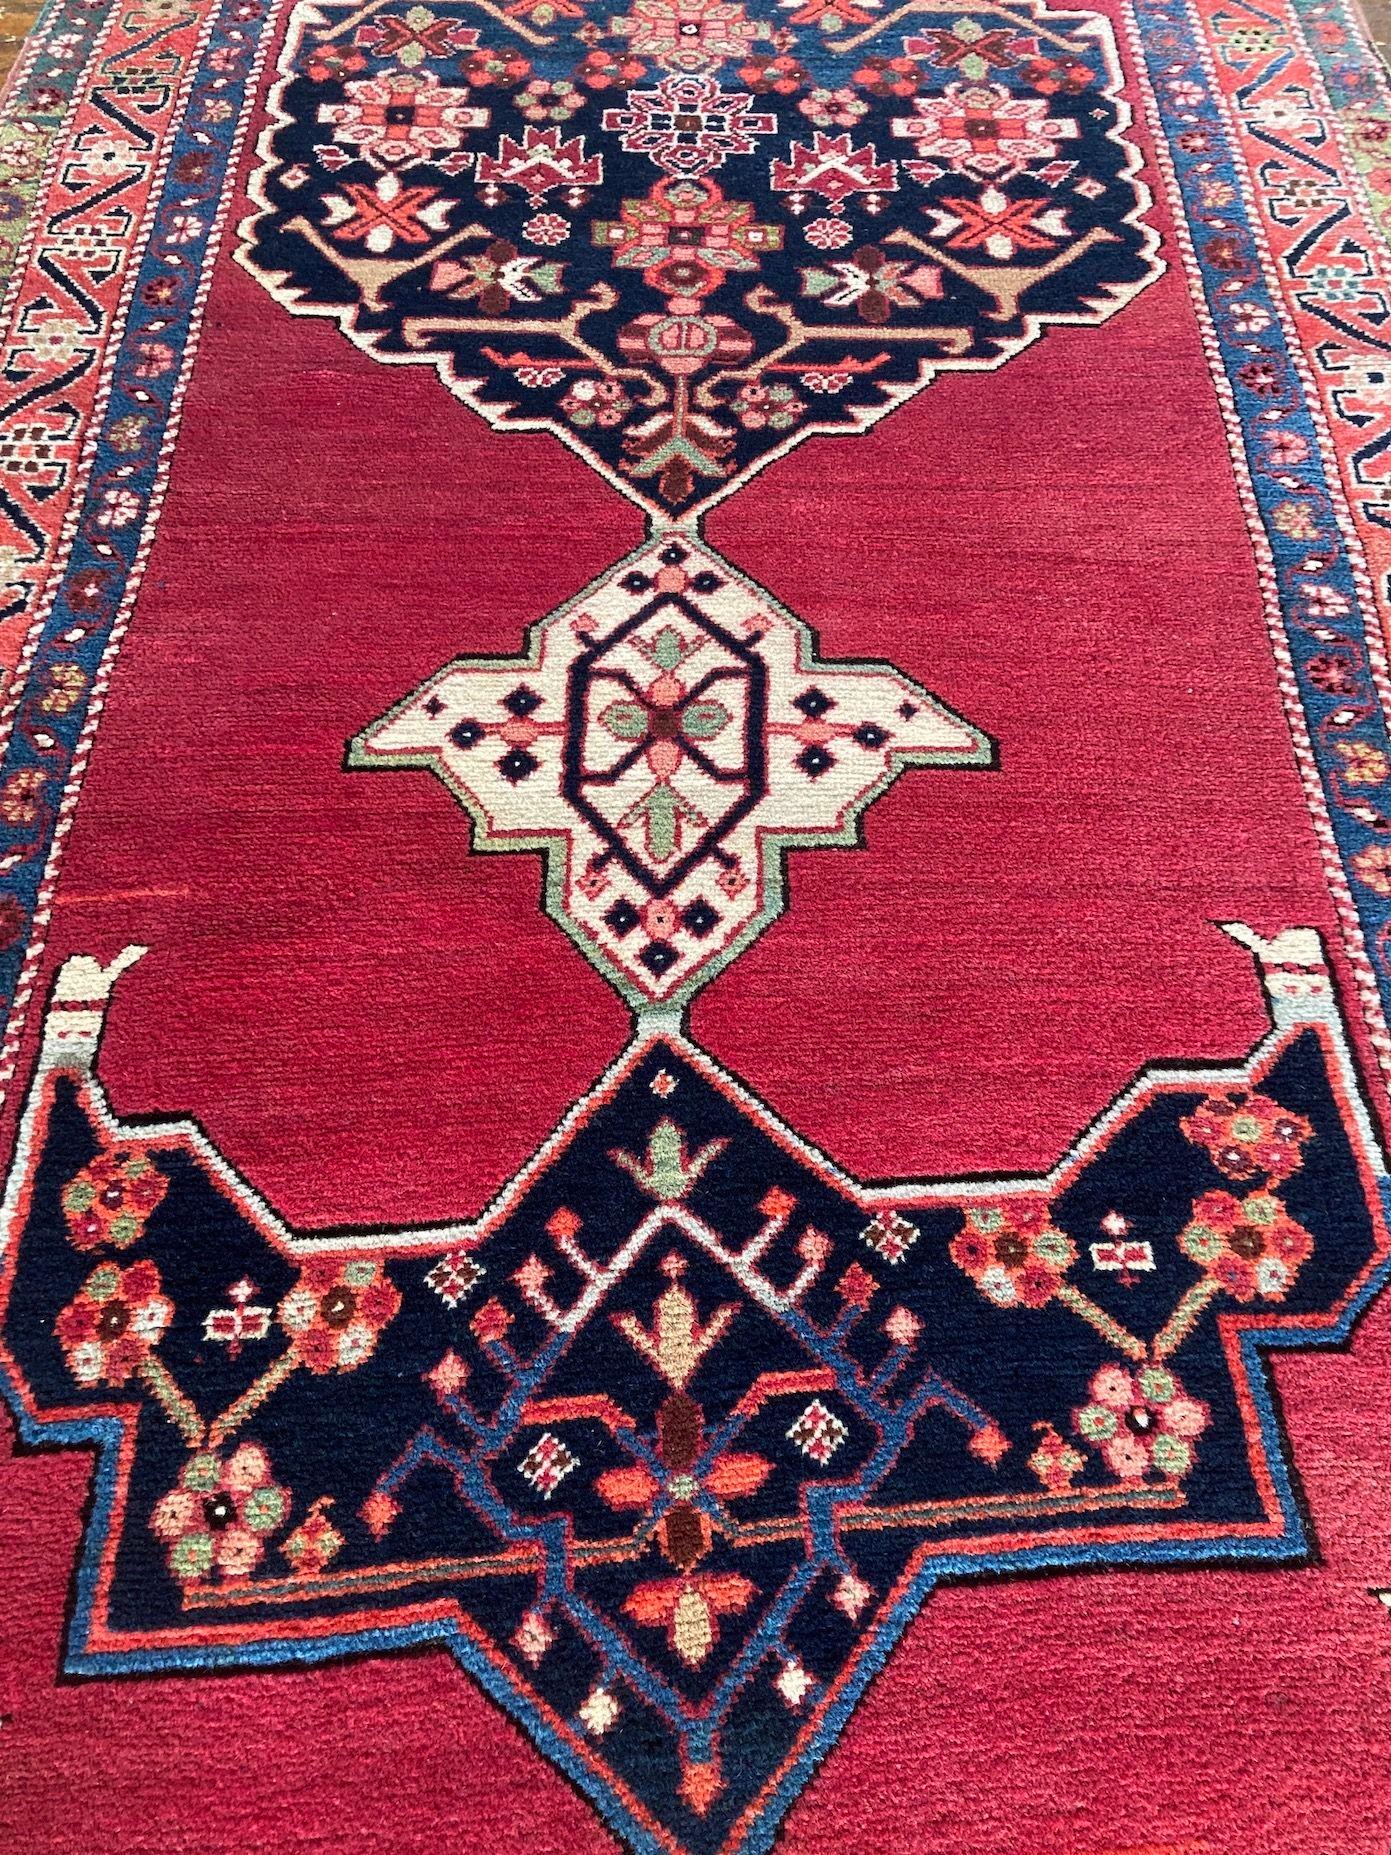 Antique Karabagh Long Rug 2.97m x 1.17m For Sale 2